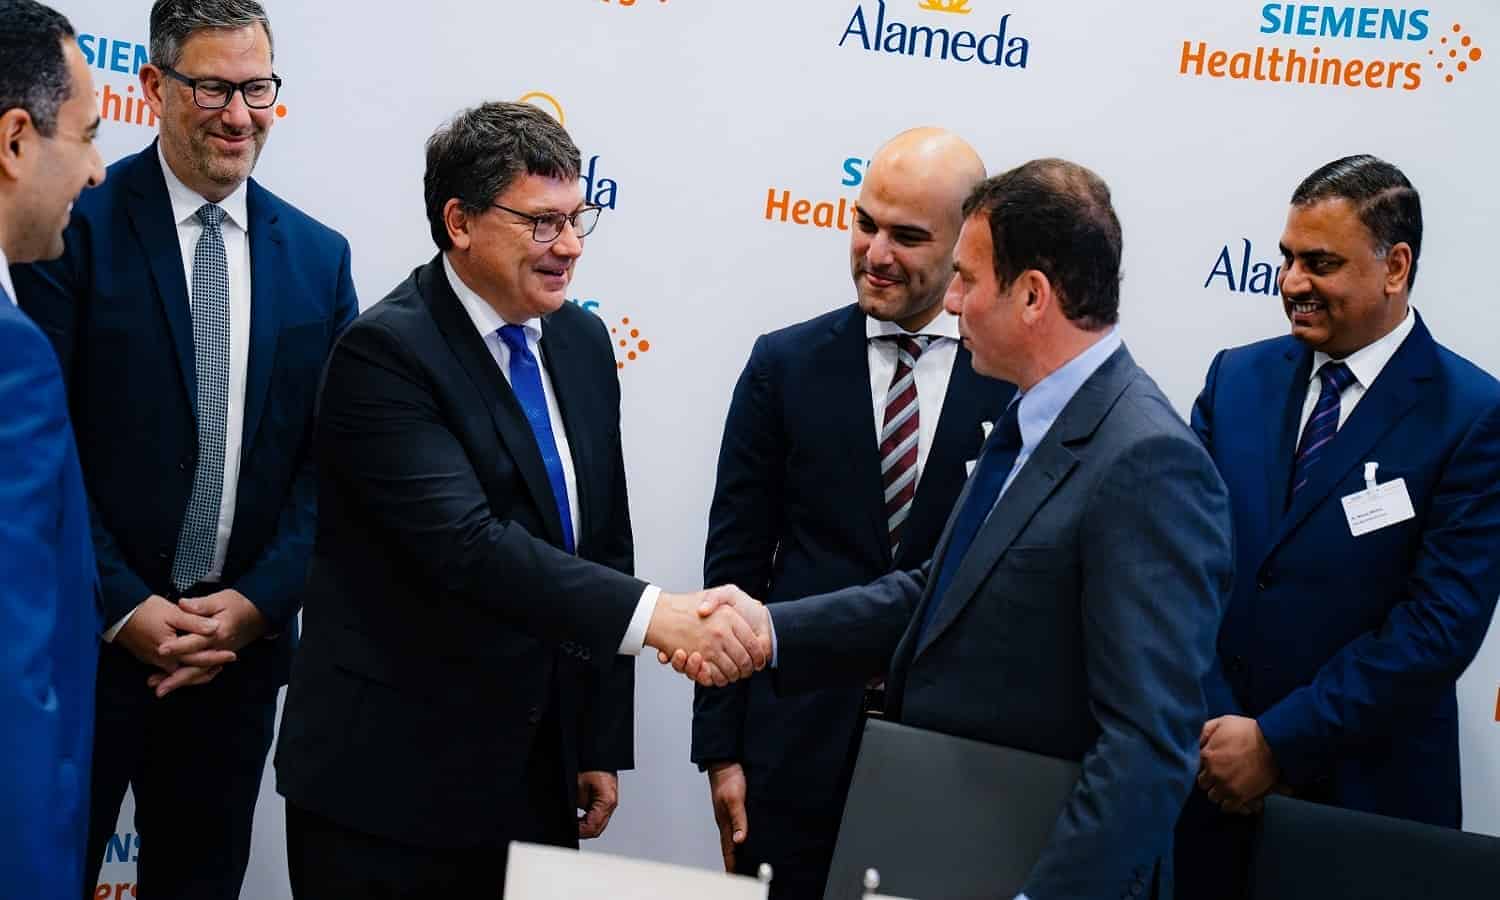 شراكة بين ألاميدا للرعاية الصحية وسيمنز هيلثنيرز لتطوير قطاع الرعاية الصحية في مصر